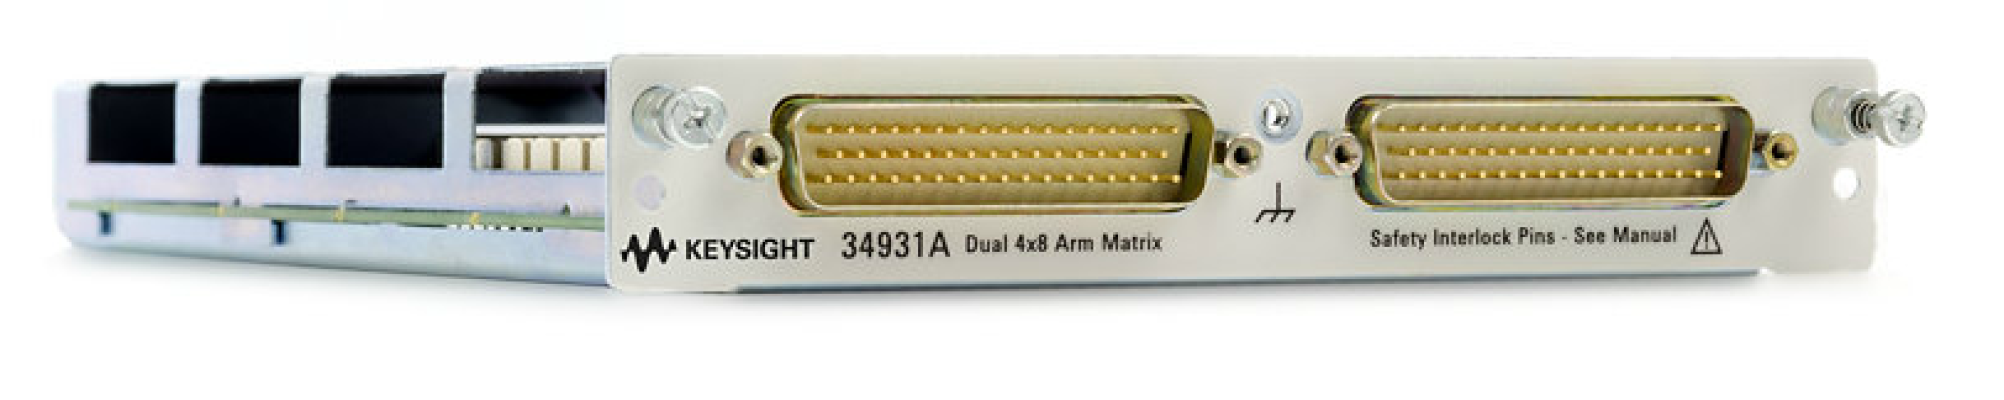 Dual 4x8 Armature Matrix for 34980A, 34931A